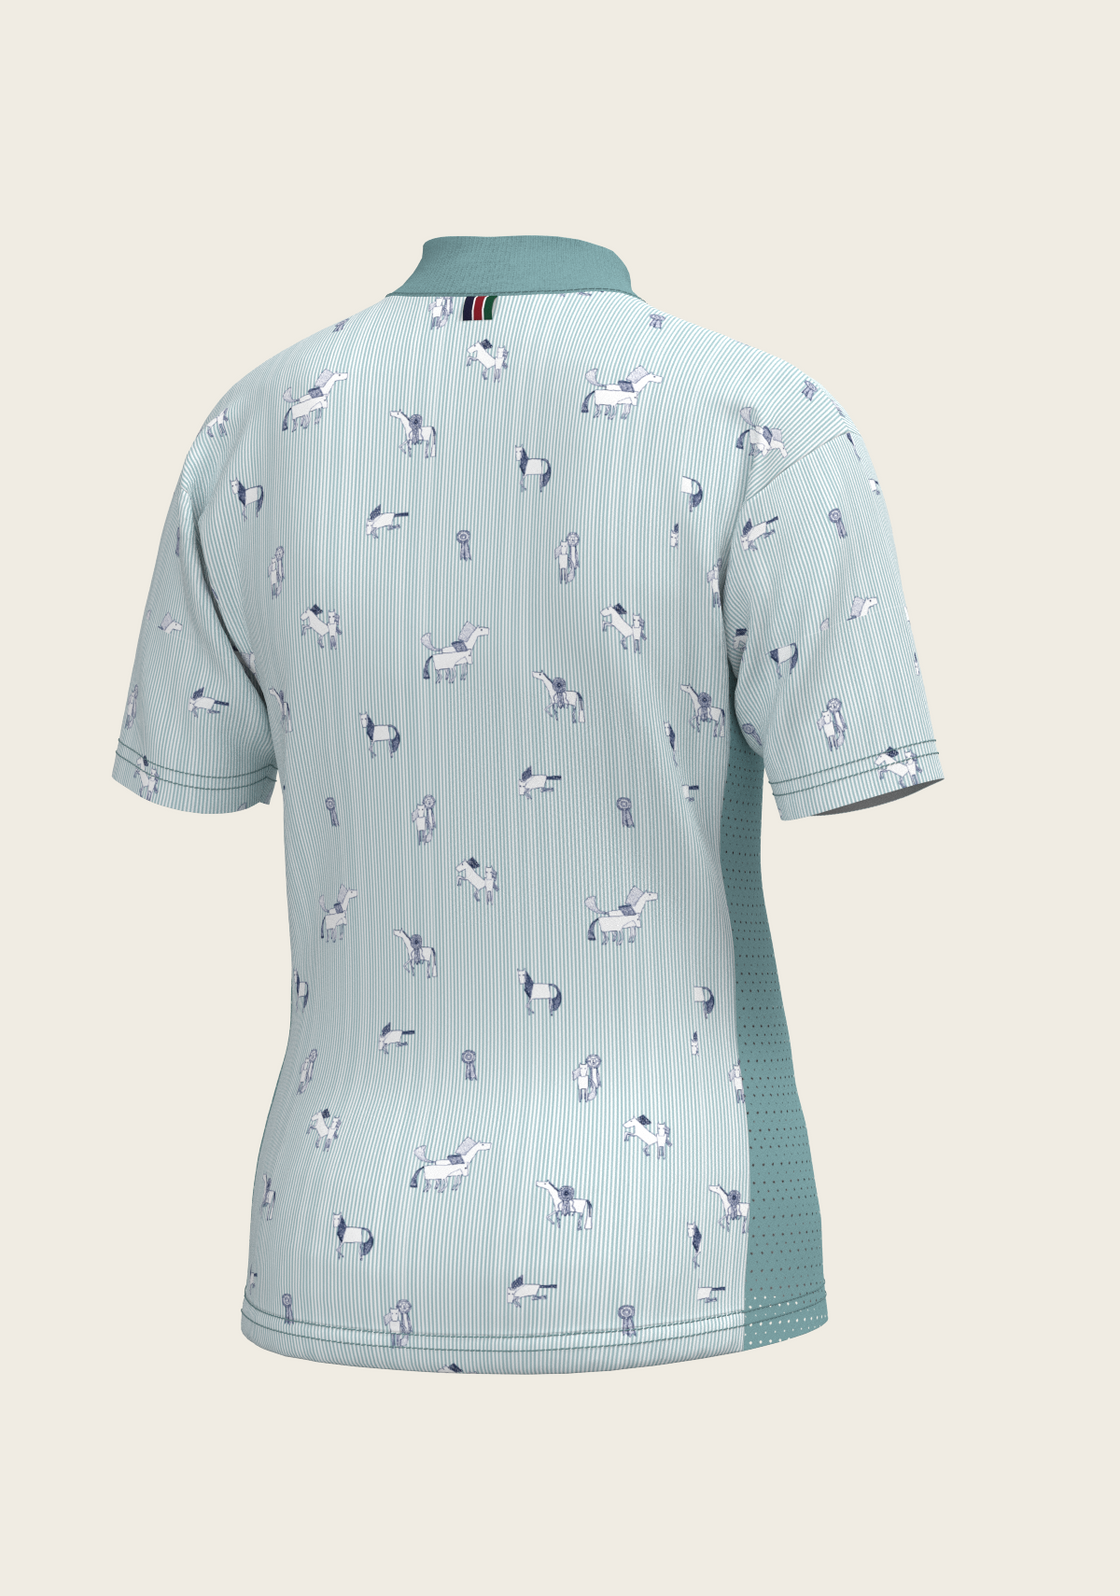 PRE ORDER • Stripes in Sky Blue Children's Short Sleeve Shirt